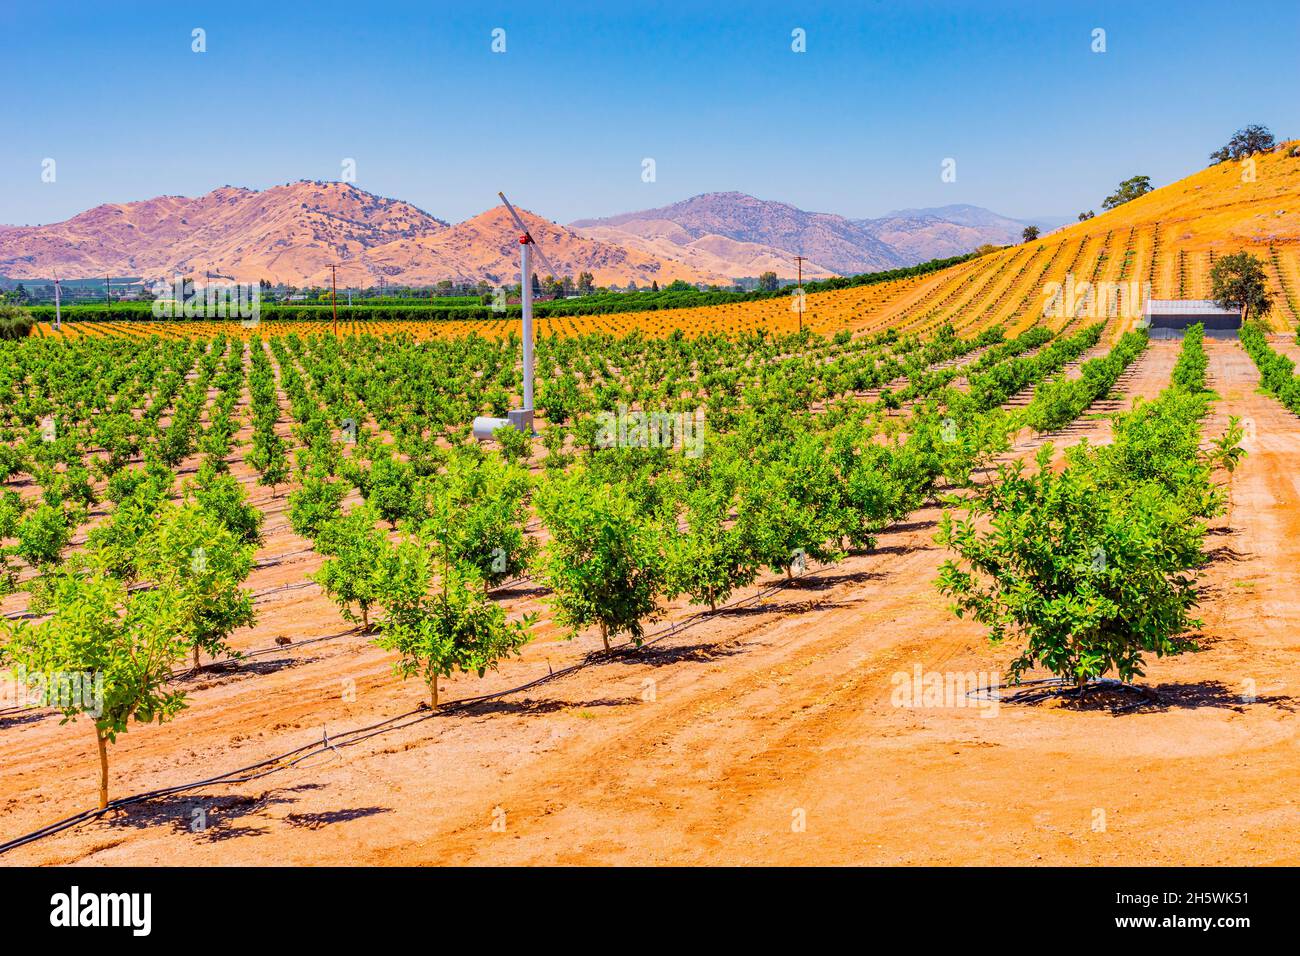 Das San Joaquin Valley ist voll von jungen Zitrusbäumen und umgeben von anderen Obstgärten im landwirtschaftlichen Zentrum von Kalifornien, in der Nähe von Visalia und F Stockfoto